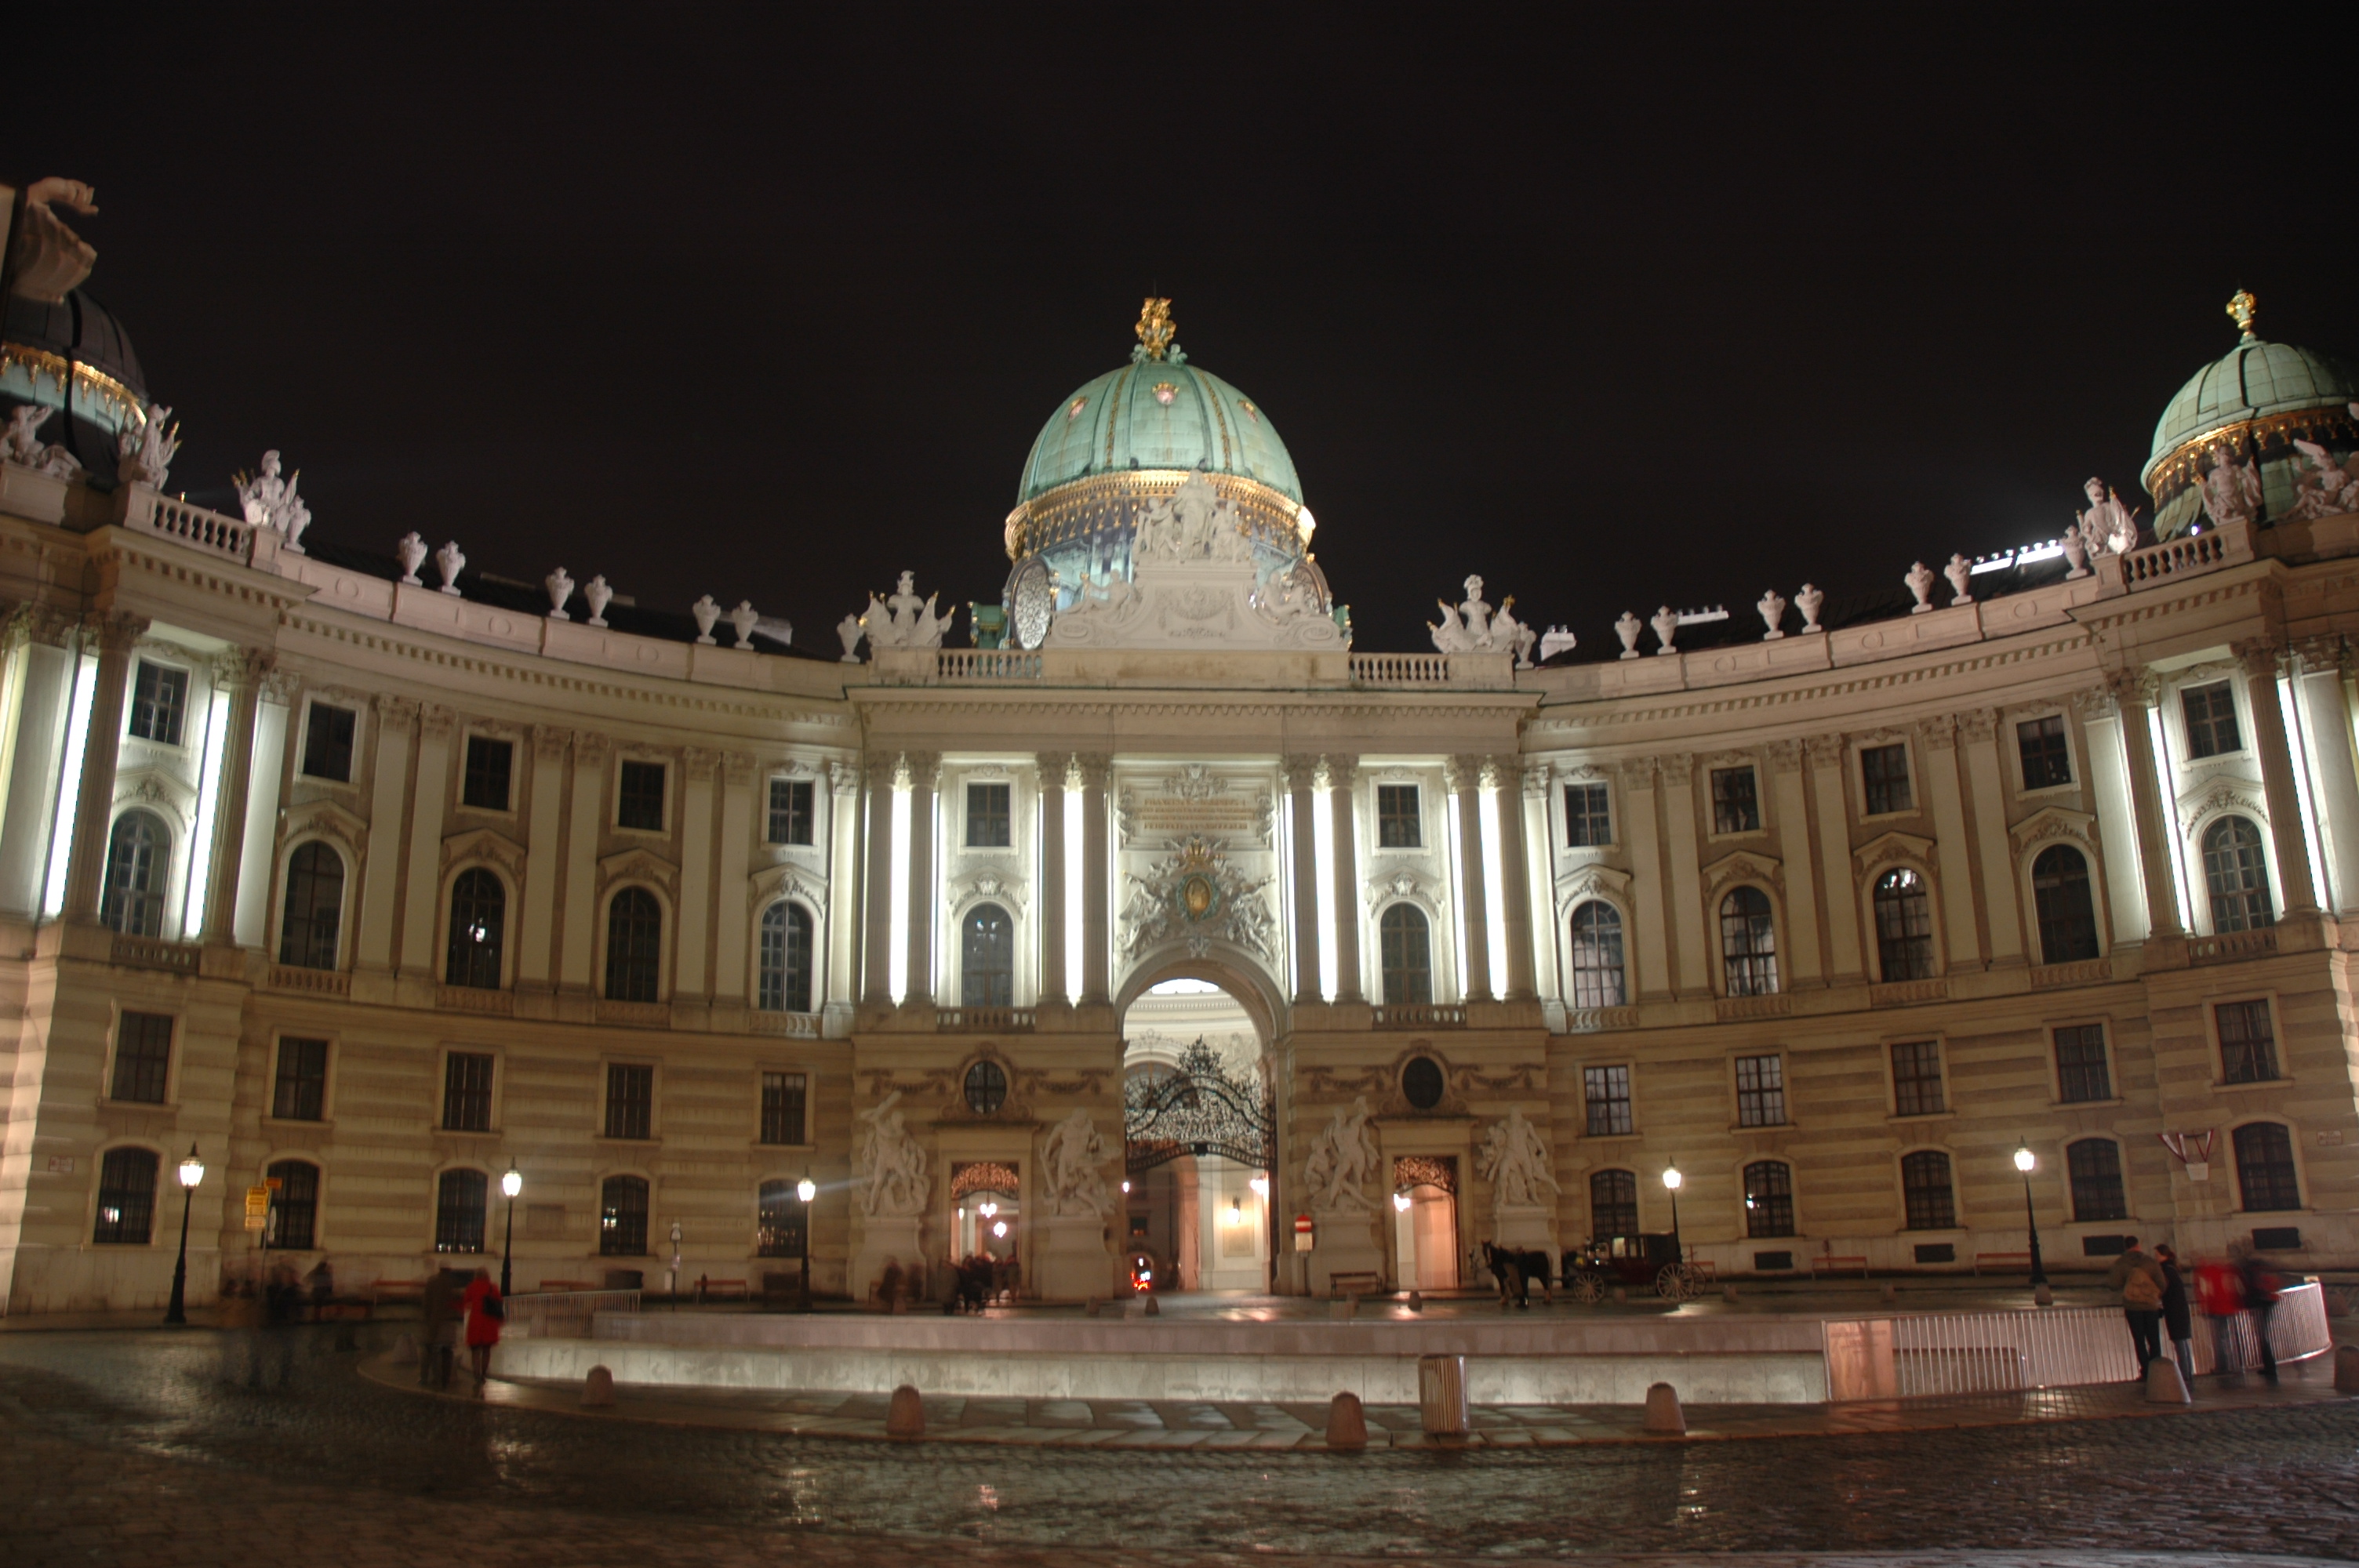 20050312-7588 Hofburg_palace_at_night